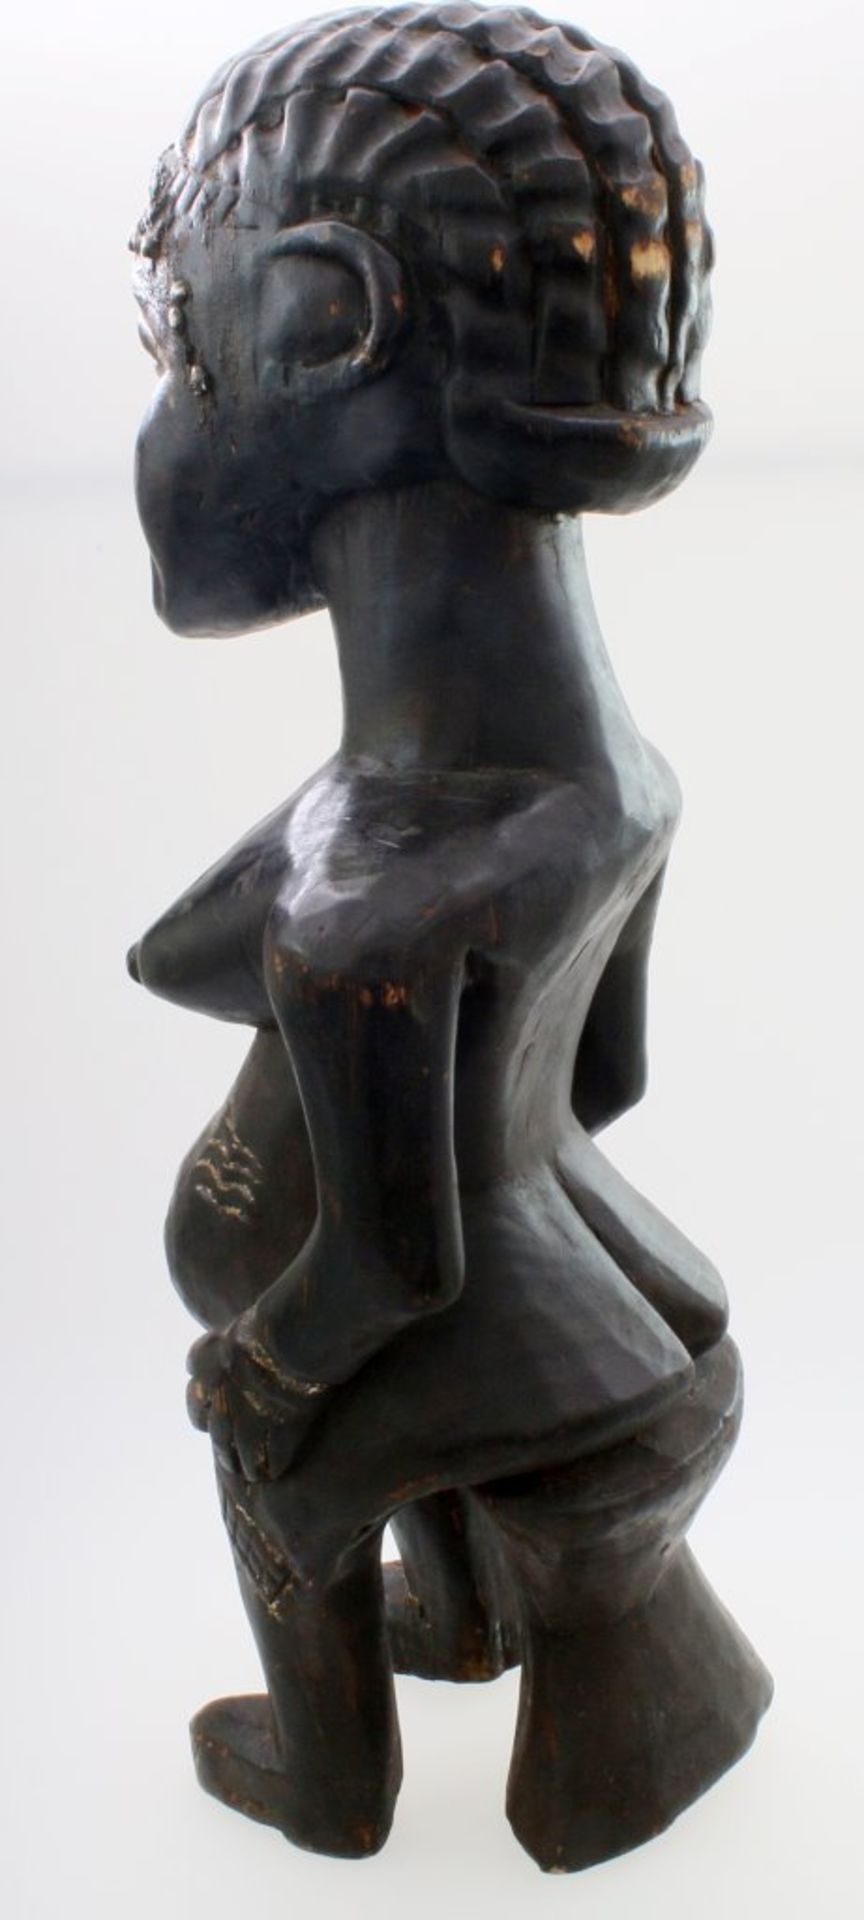 Westafrika - Große Ahnenfigur Schwarz / braun gefärbtes Tropenholz. Auf Stütze sitzende Figur, - Image 3 of 6